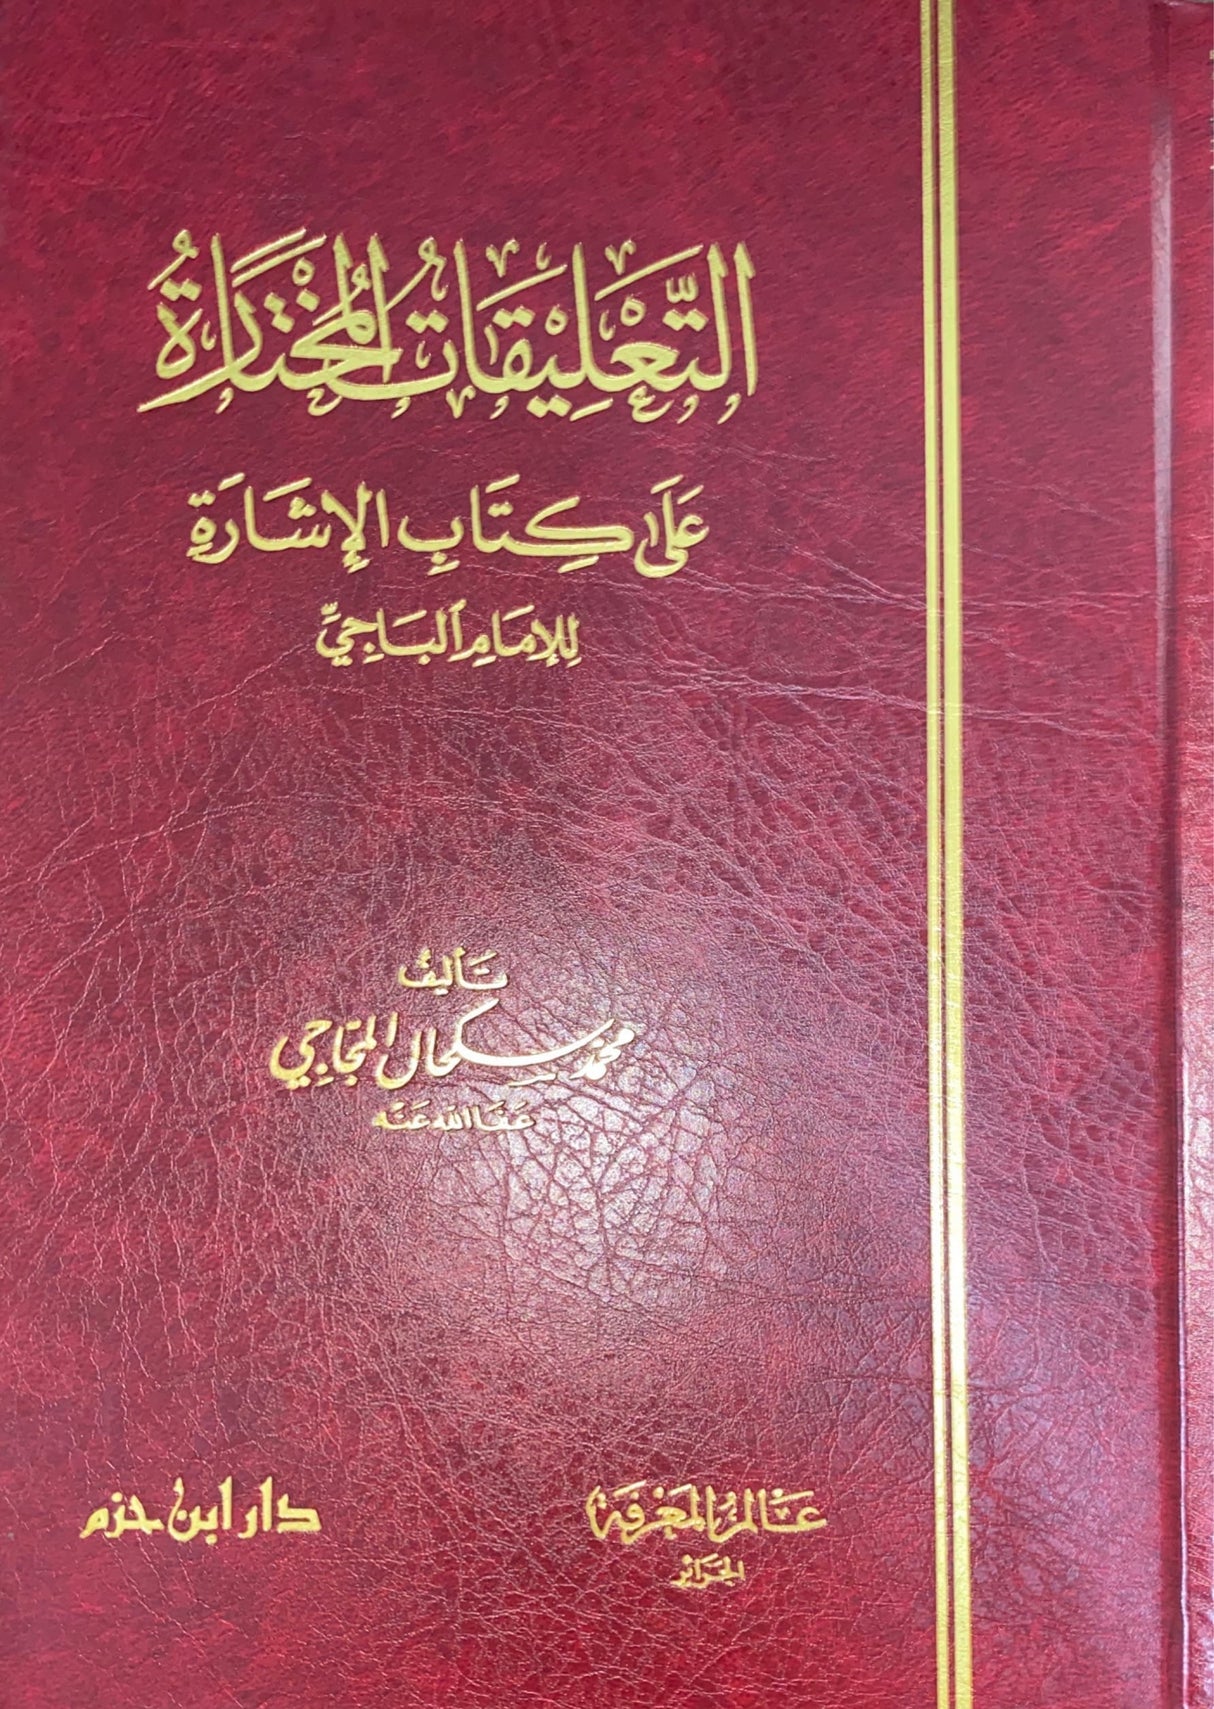 التعليقات المختارة على كتاب الاشارة Al Taleqatul Mukhtara Ala Kitabil Isharah